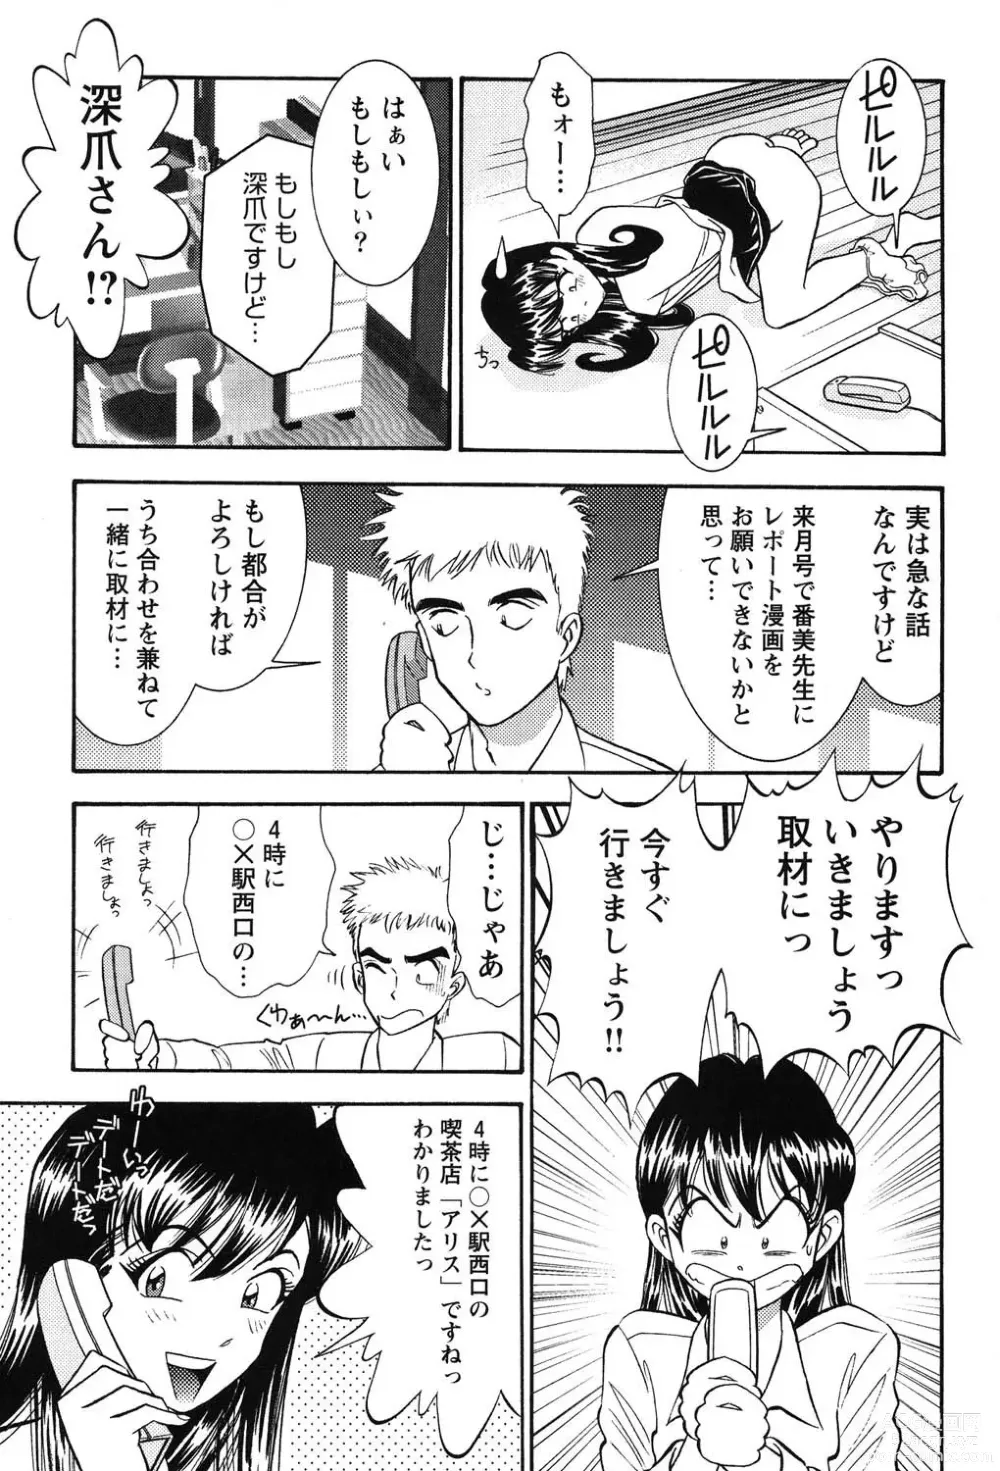 Page 10 of manga Bambina Oiroke  Battle  Hen